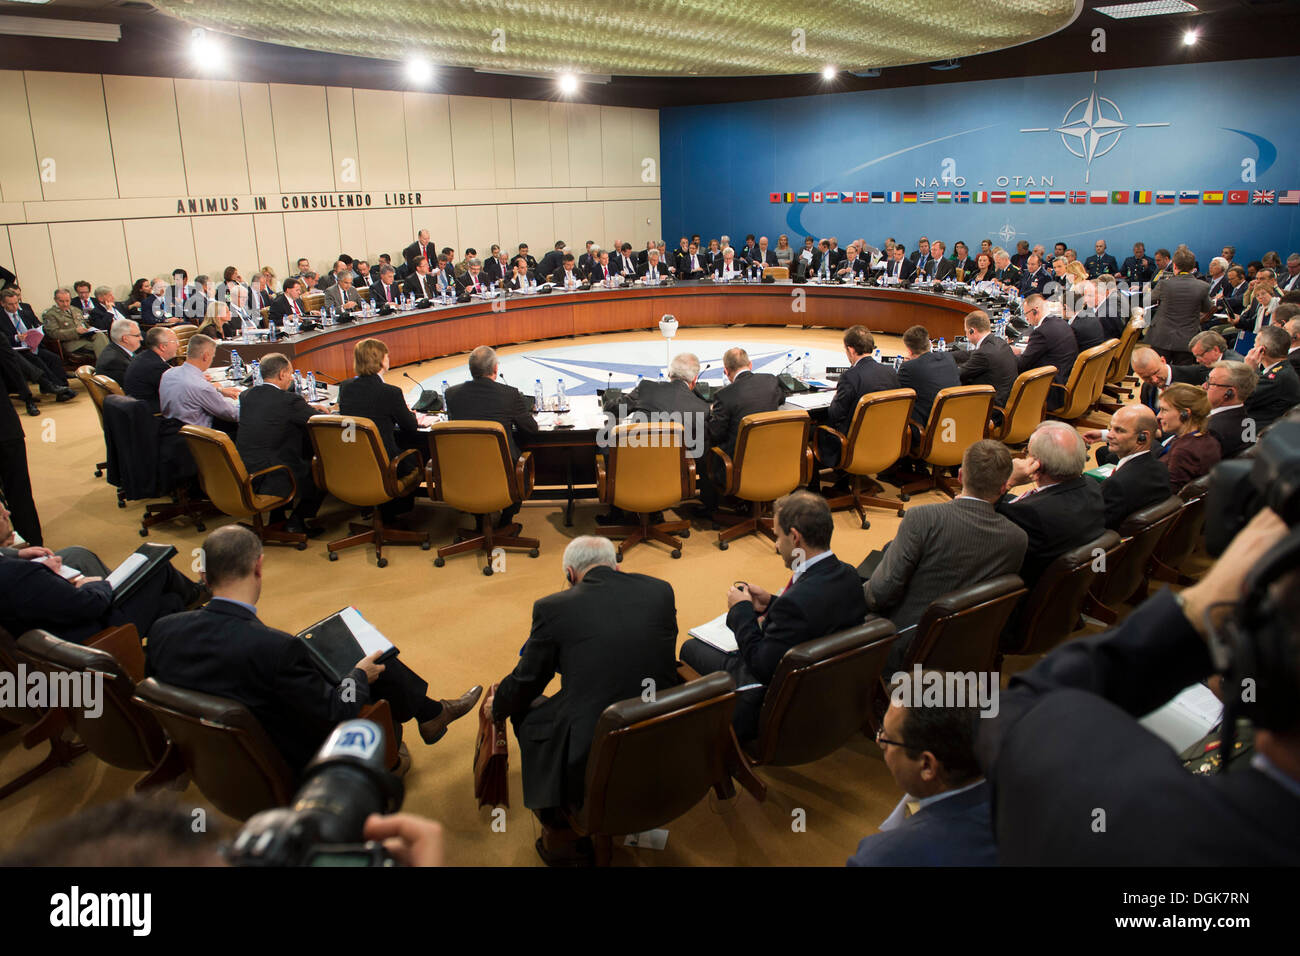 US-Verteidigungsminister Chuck Hagel und andere Führer der Verteidigung beteiligt sich an der North Atlantic Council-Sitzung im NATO-Hauptquartier 22. Oktober 2013 in Brüssel, Belgien. Stockfoto